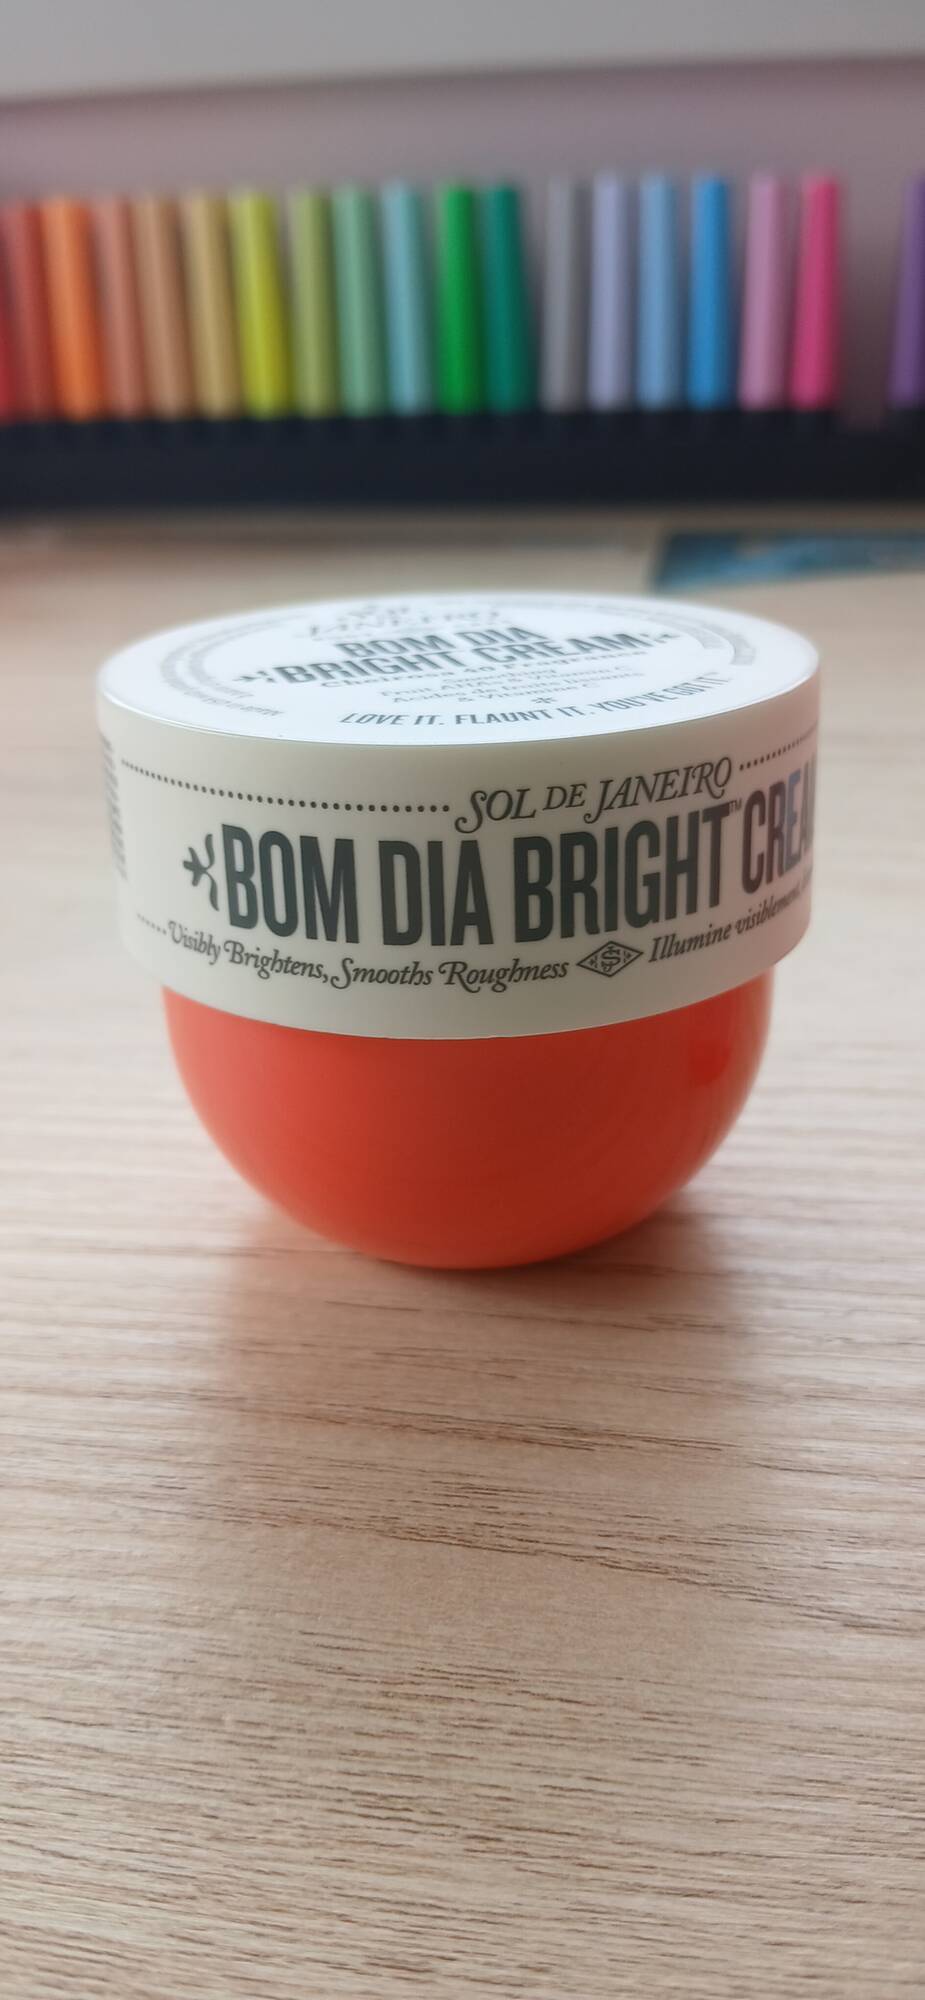 SOL DE JANEIRO - Bom dia bright cream